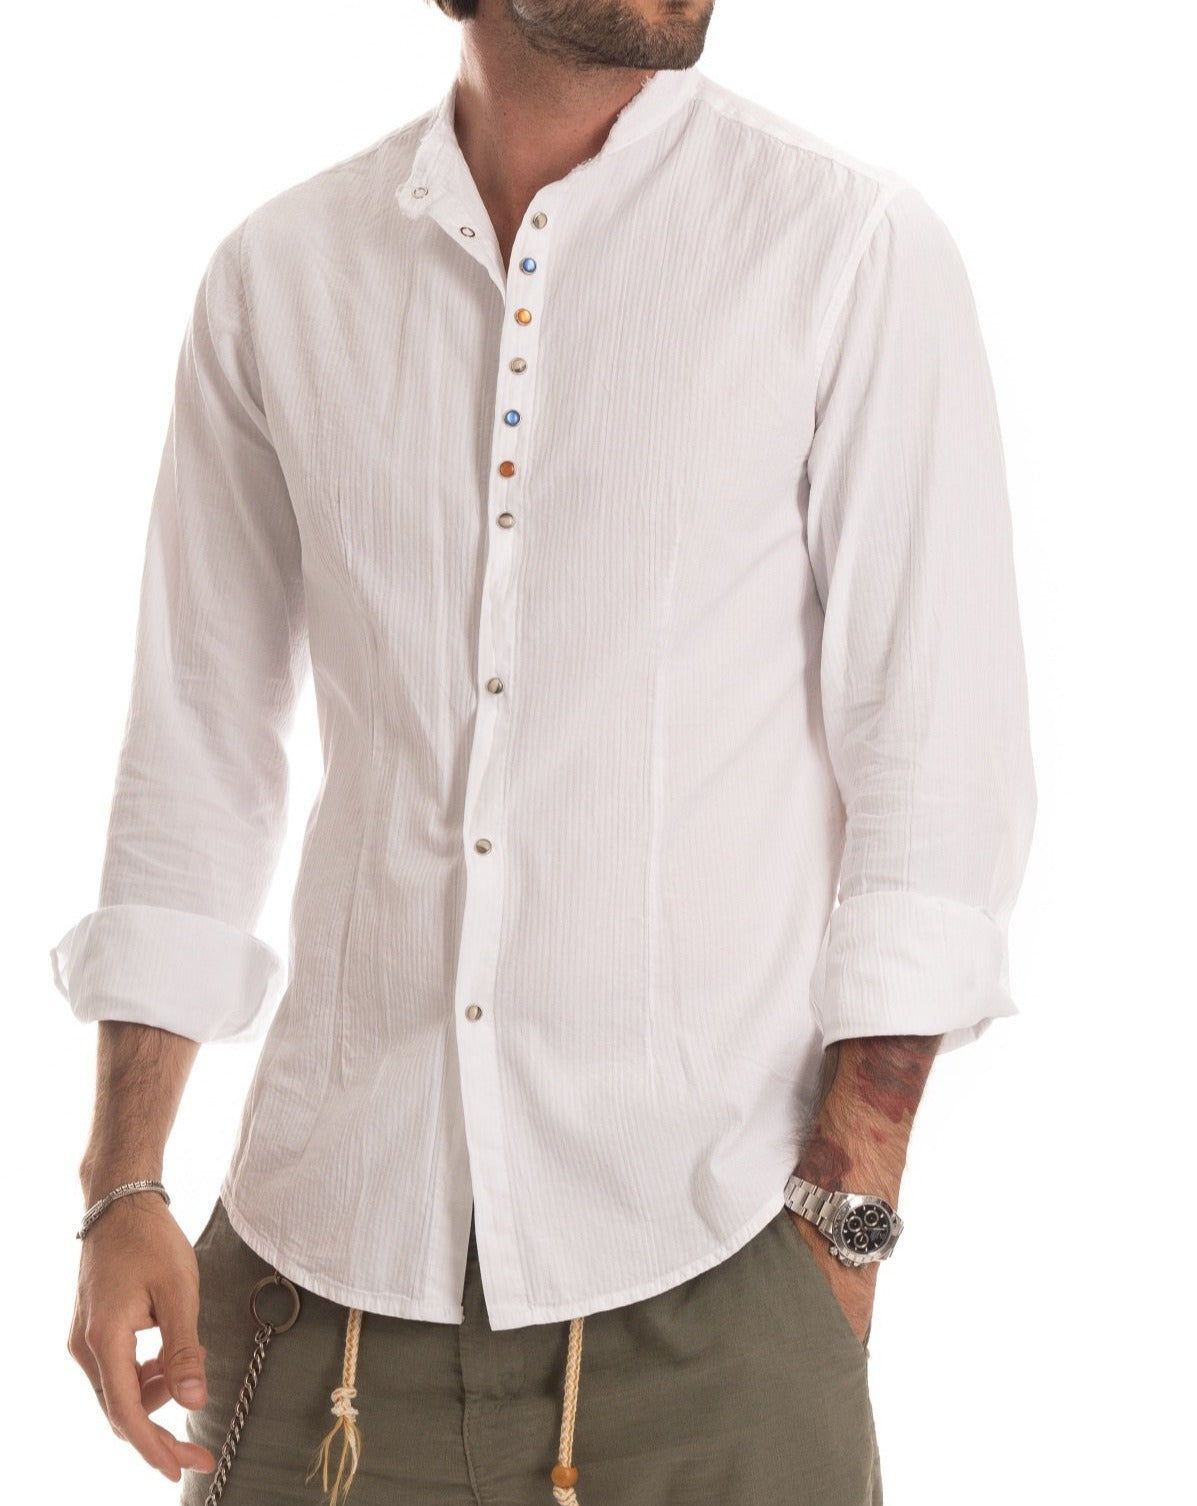 Elba - Camicia coreana bianca con bottoni gioiello